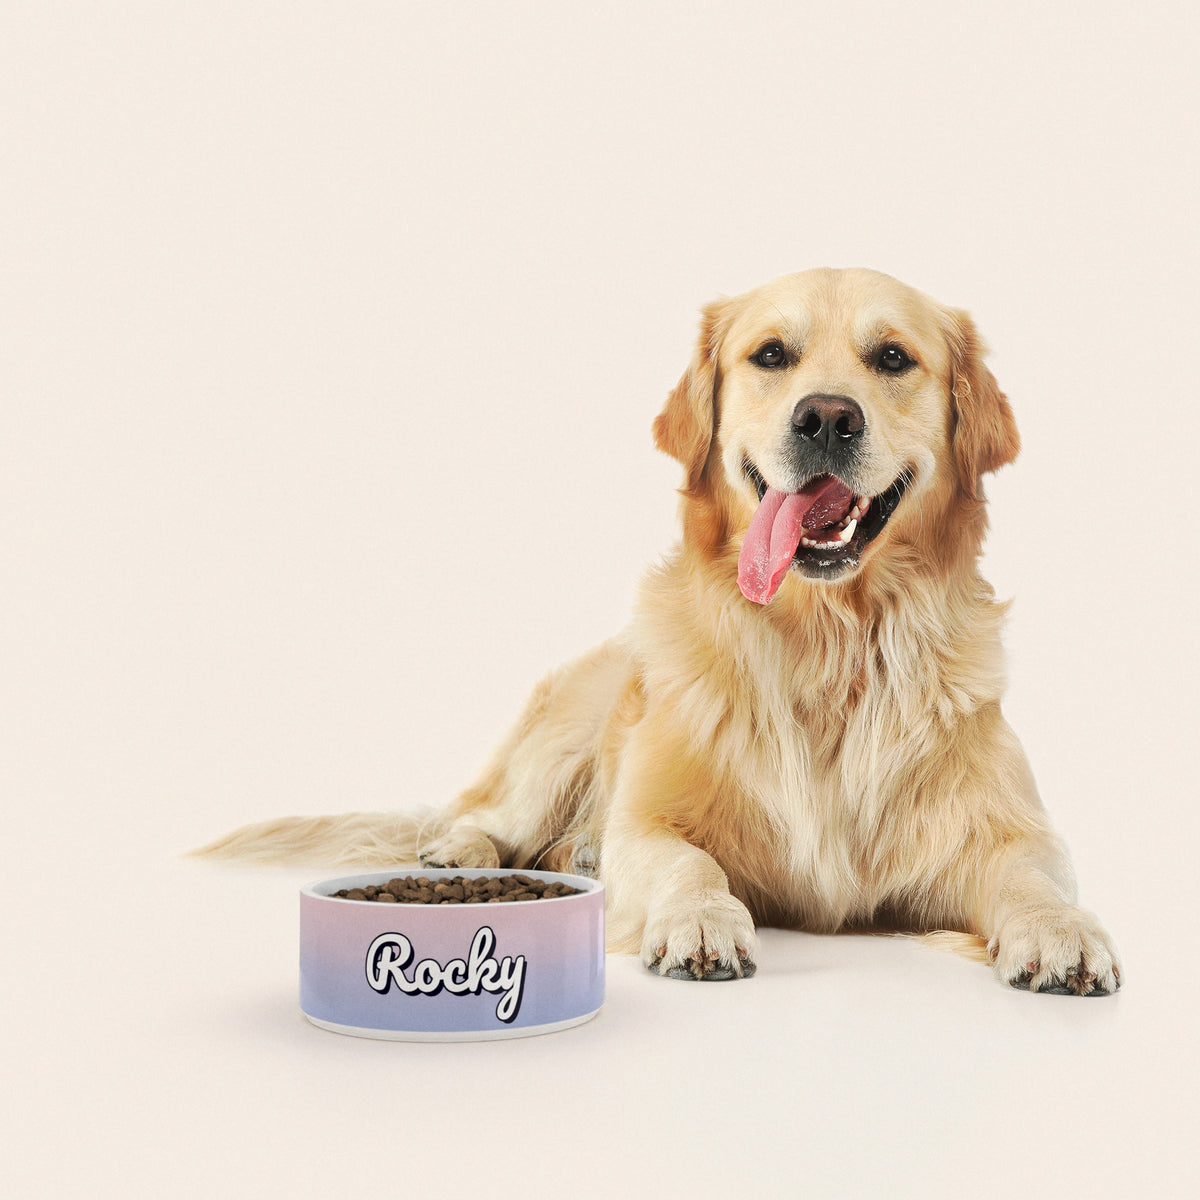 Un golden retriever assis à côté d'un bol pour chien au motif Duo Poudré personnalisé avec le nom ROCKY